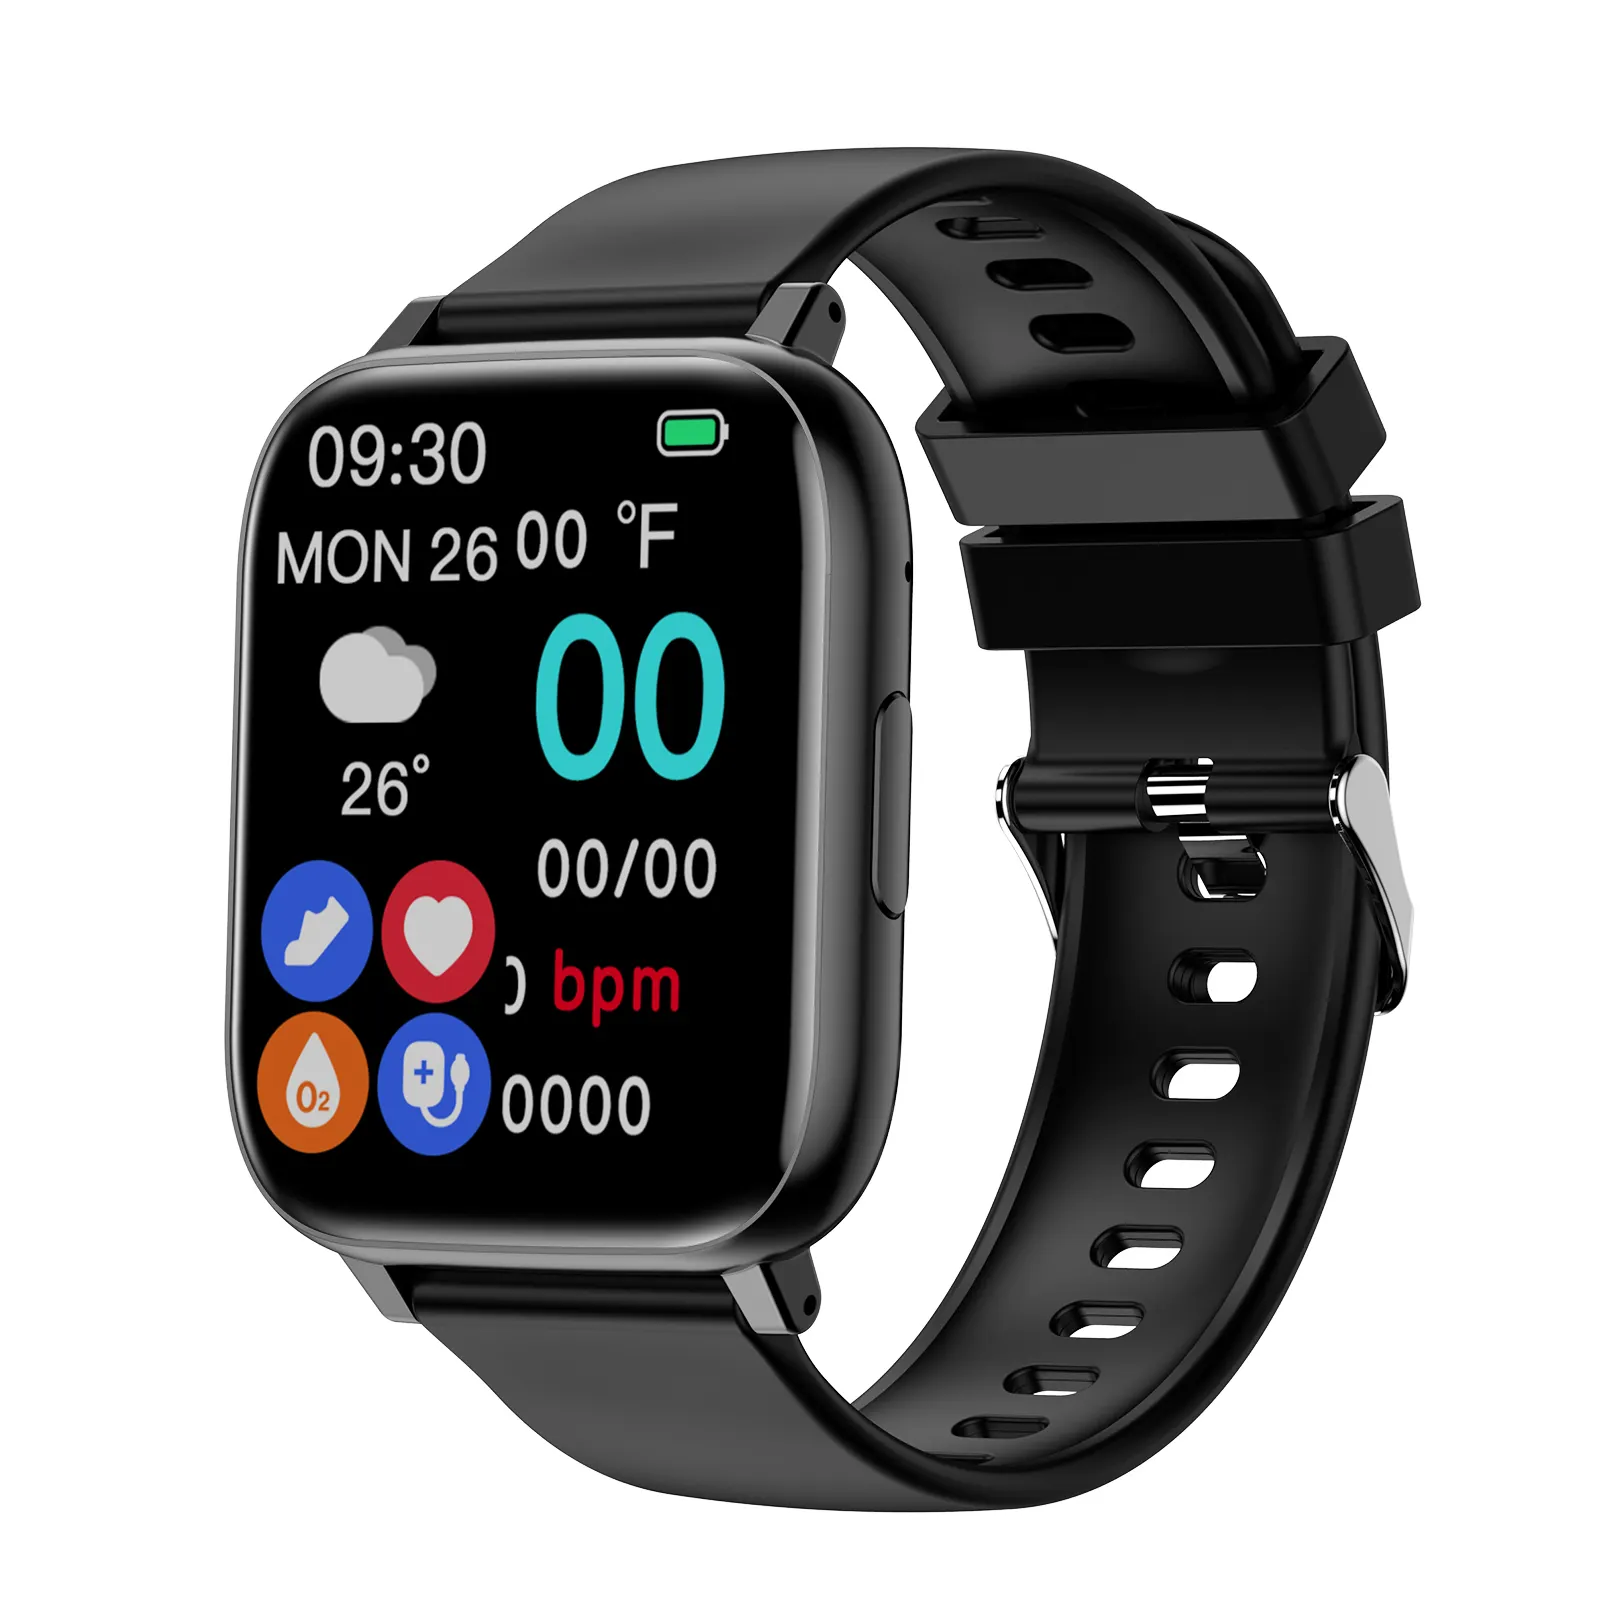 KINGSTAR arloji cerdas asli, jam tangan pintar IP67 BT panggilan layar sentuh pelacak kebugaran Monitor detak jantung tahan air